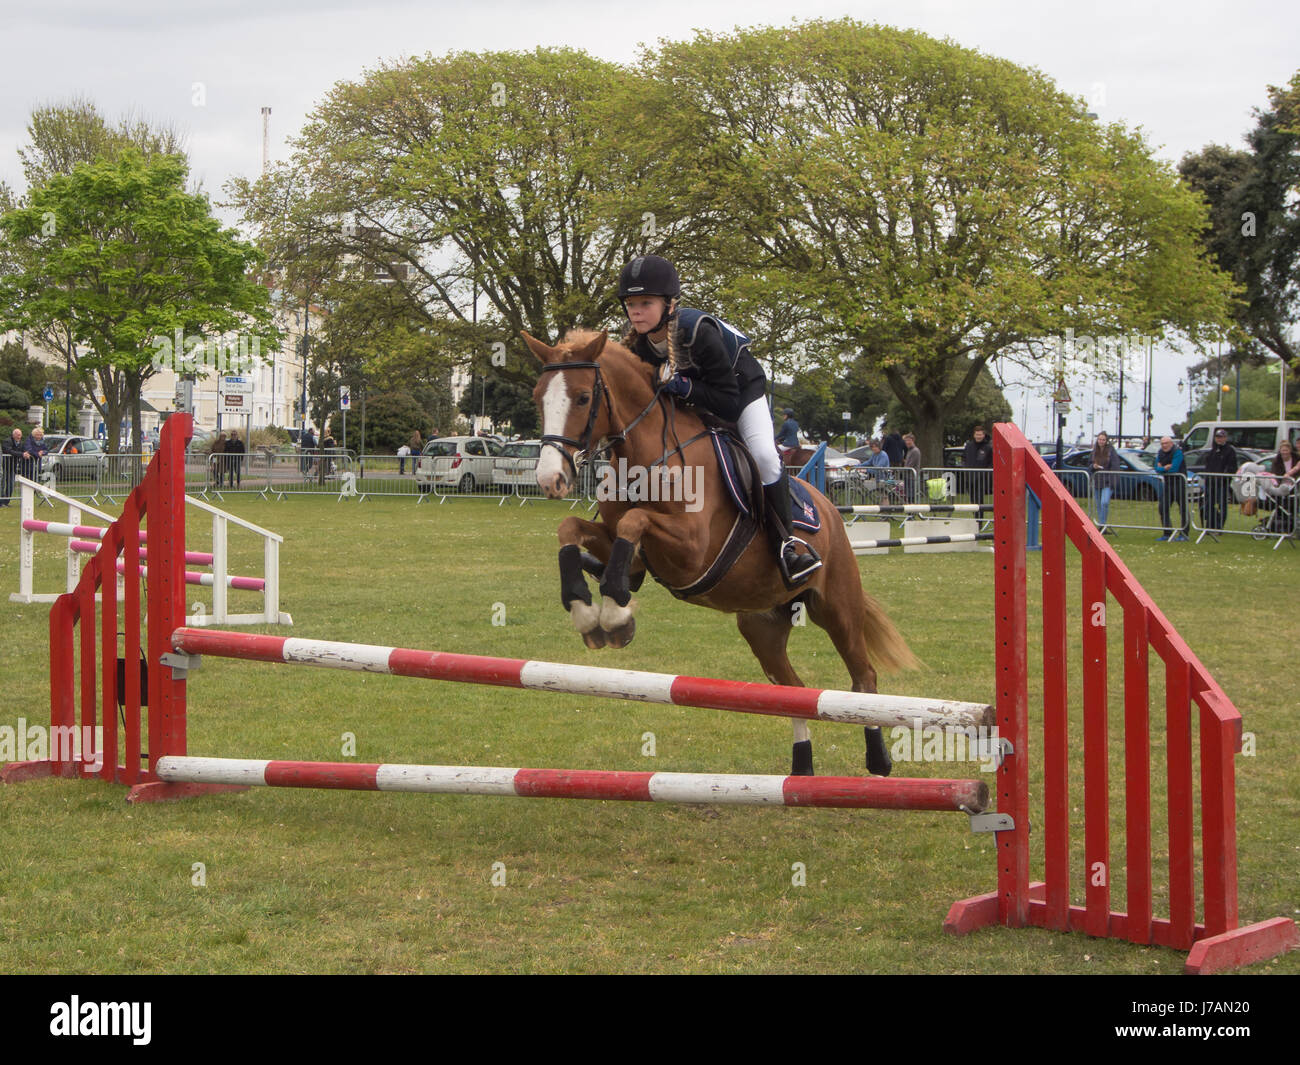 Un adolescent à cheval prend un saut lors d'un concours de saut. Banque D'Images